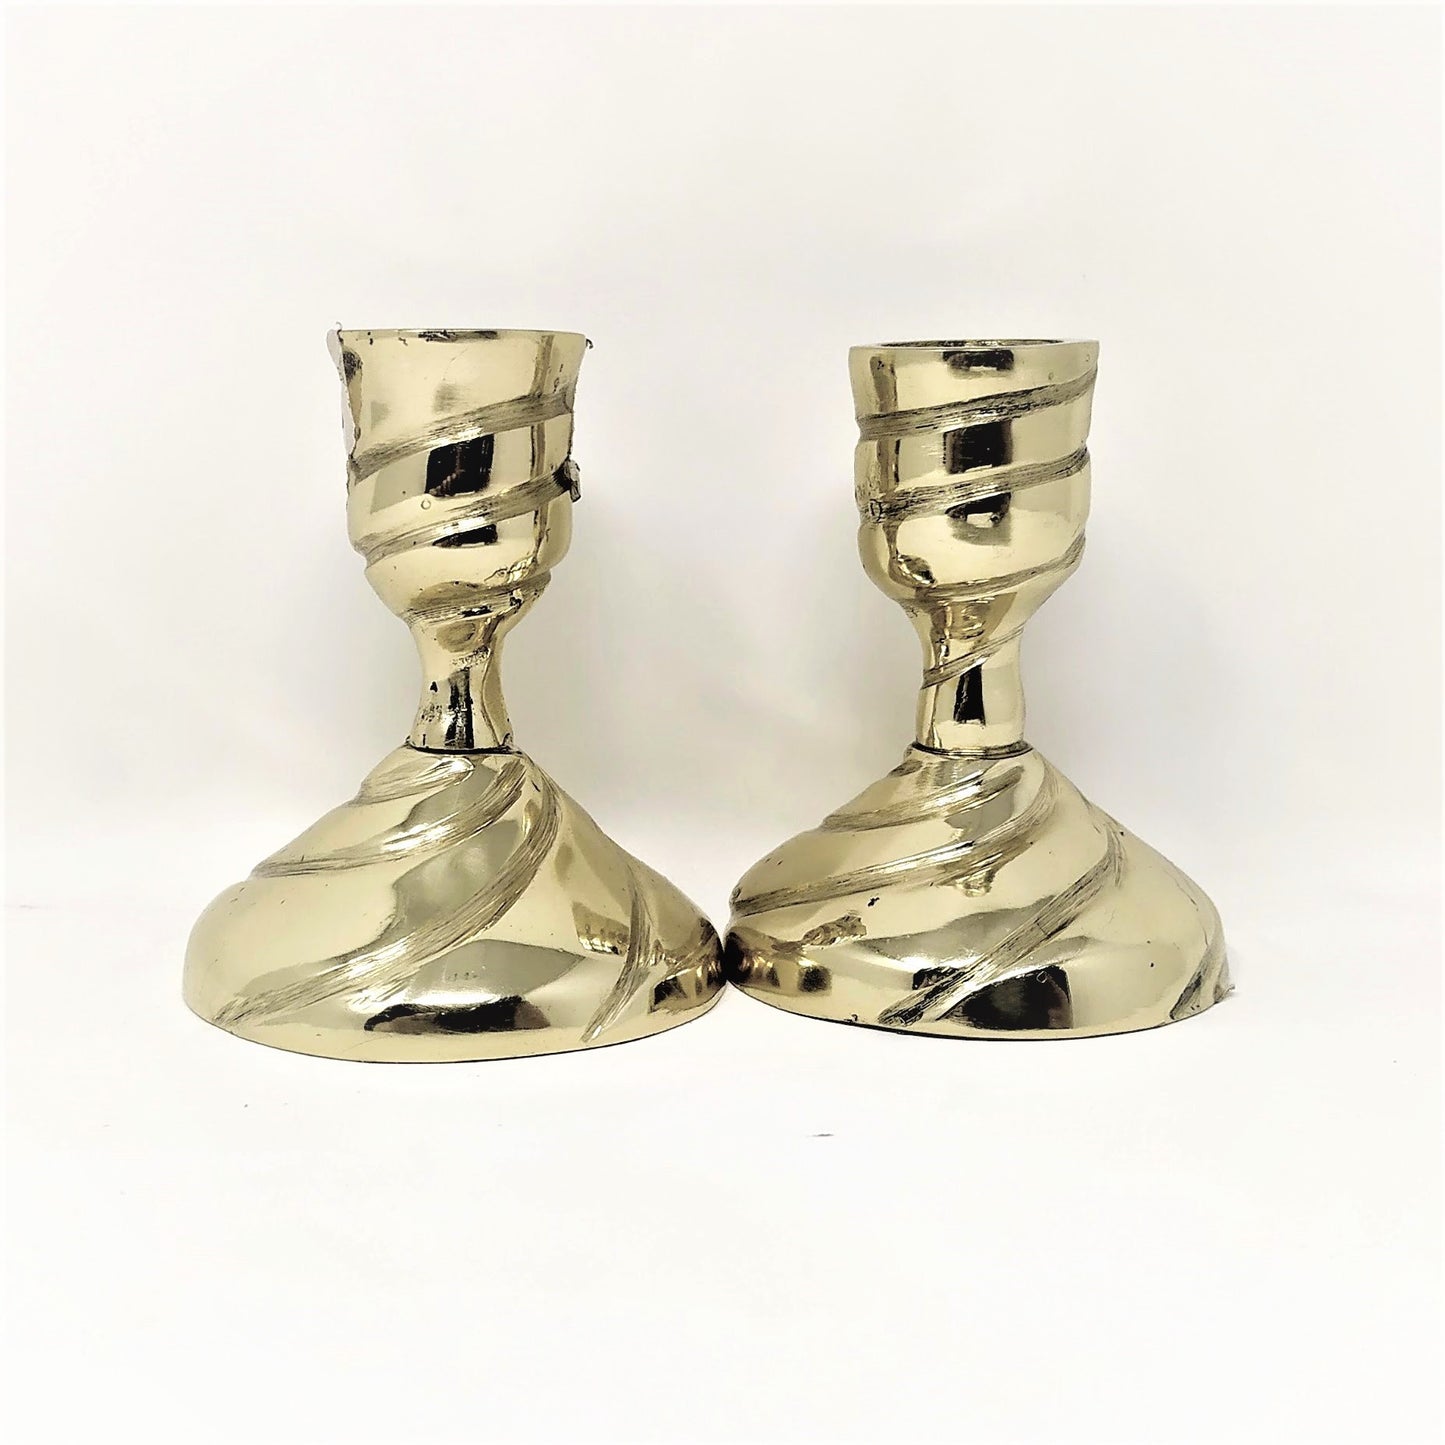 Candelabros Shabat de bronce chicos sencillo 18811